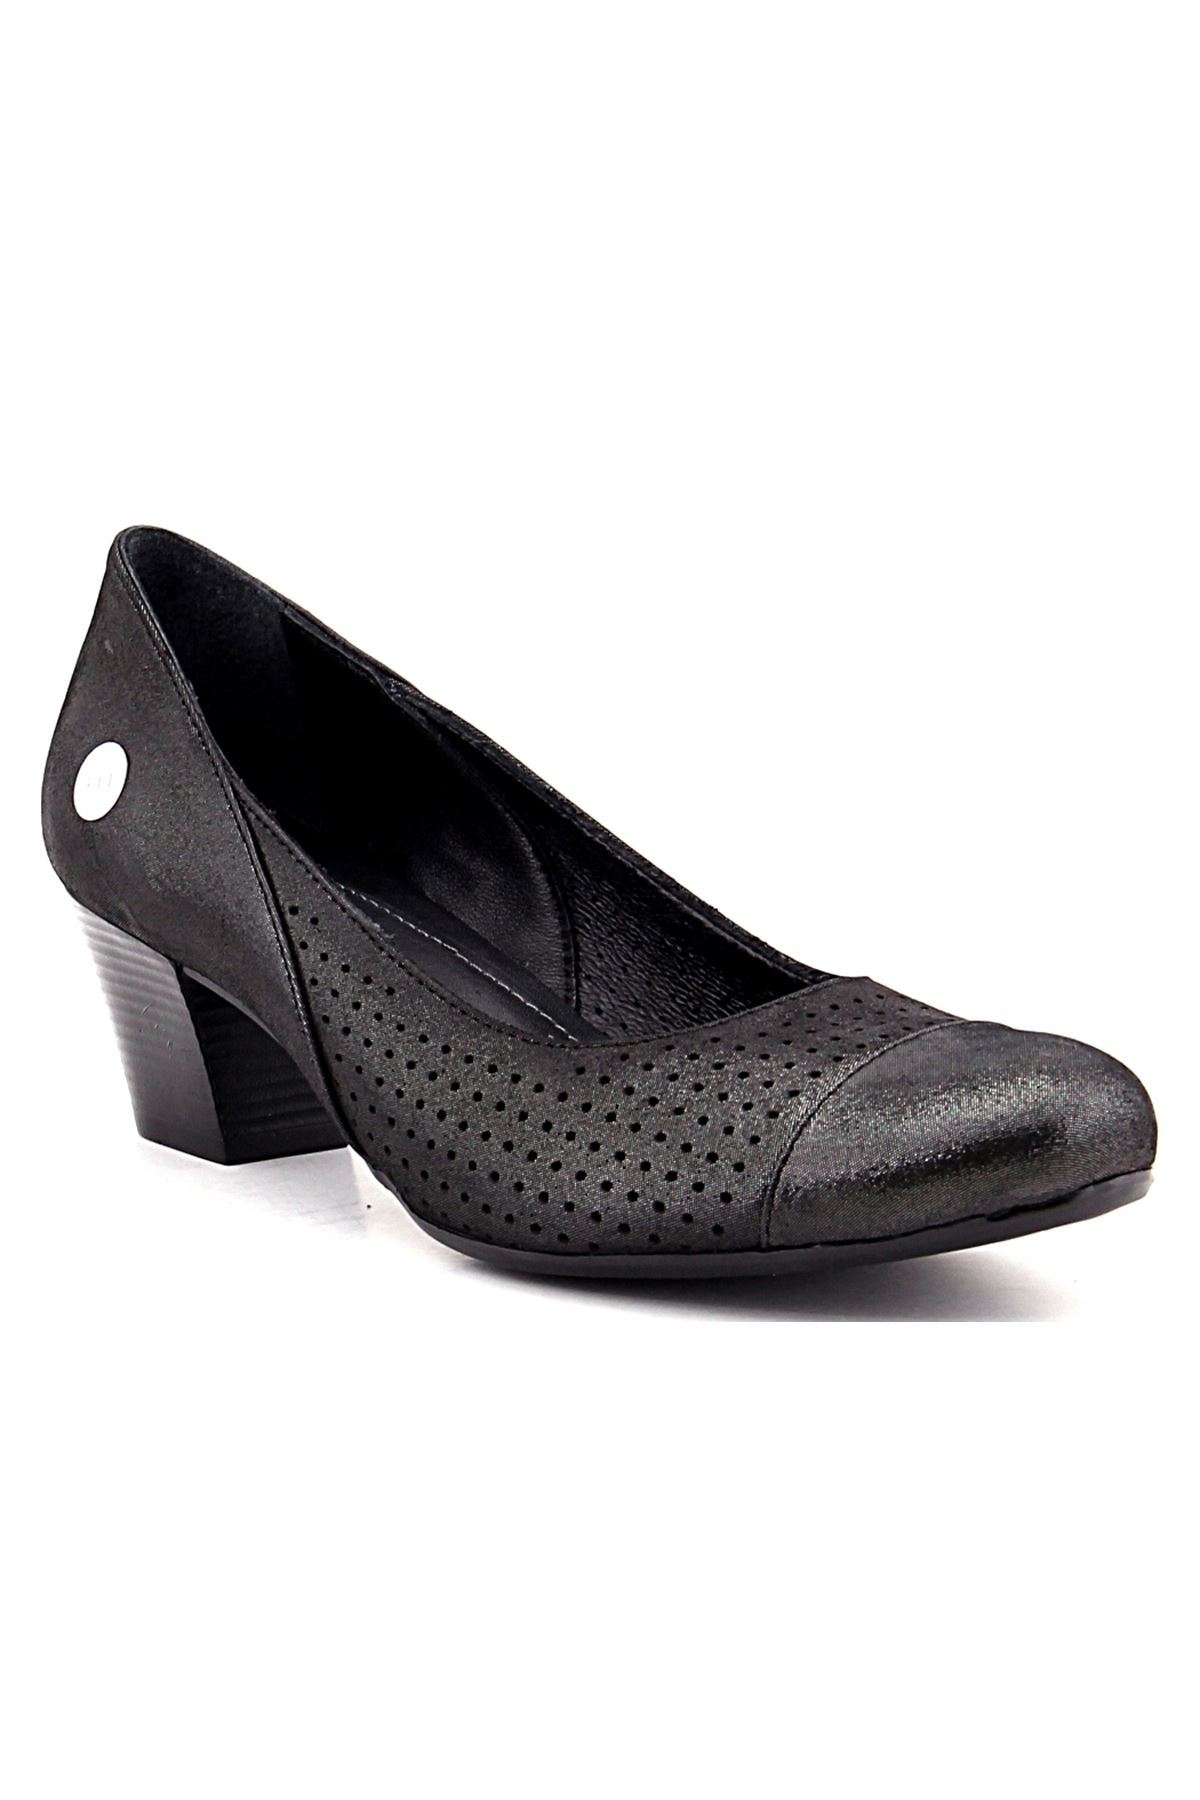 4080 Mammamia Günlük Bayan Ayakkabı - Siyah Çelik